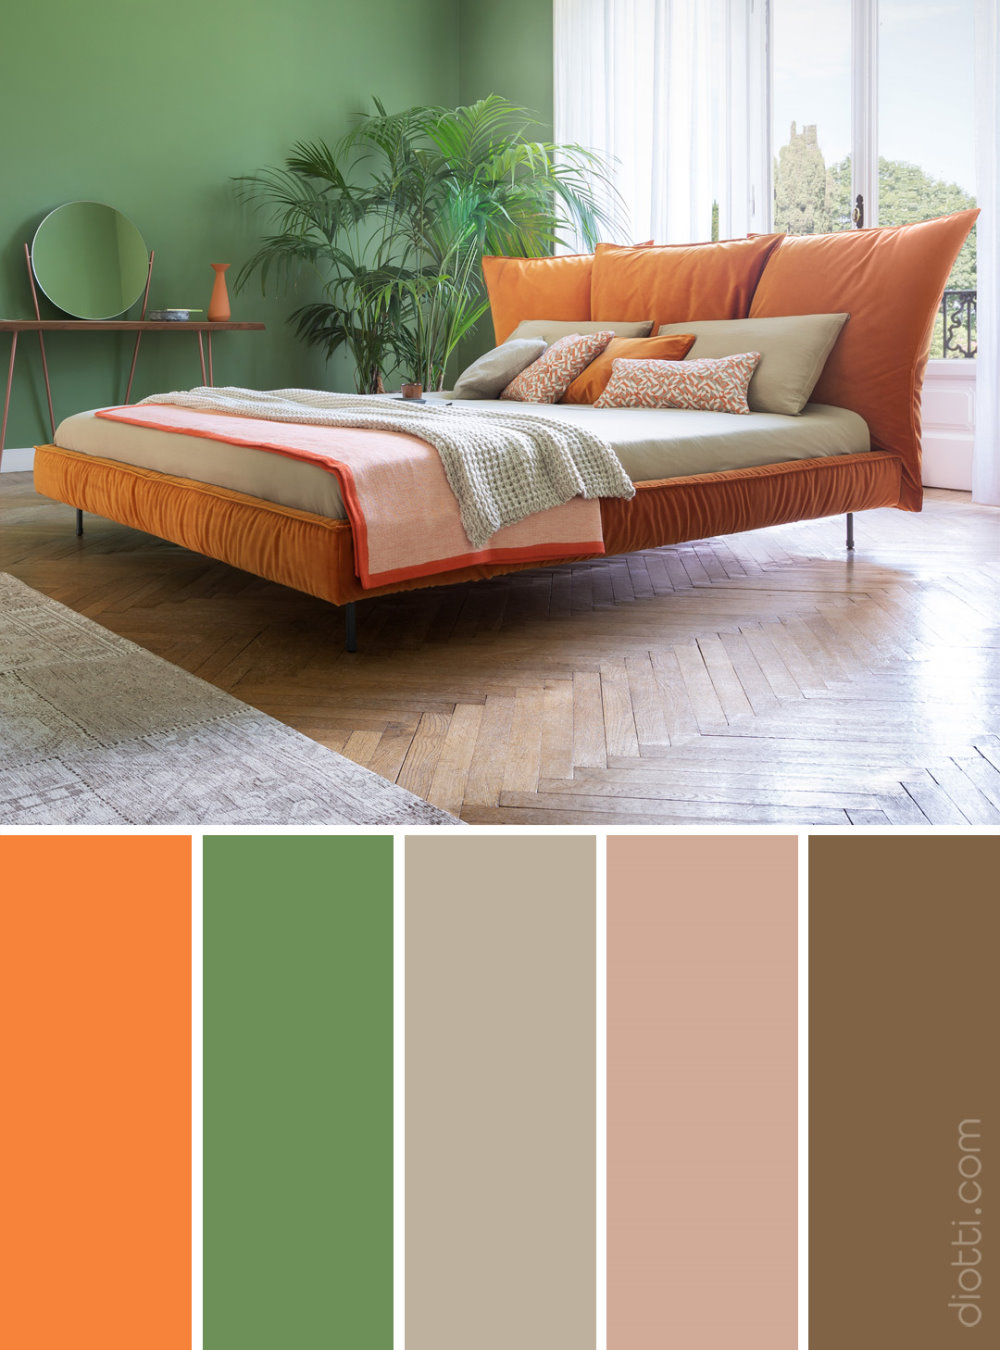 Palette di colori che abbina arancione e verde